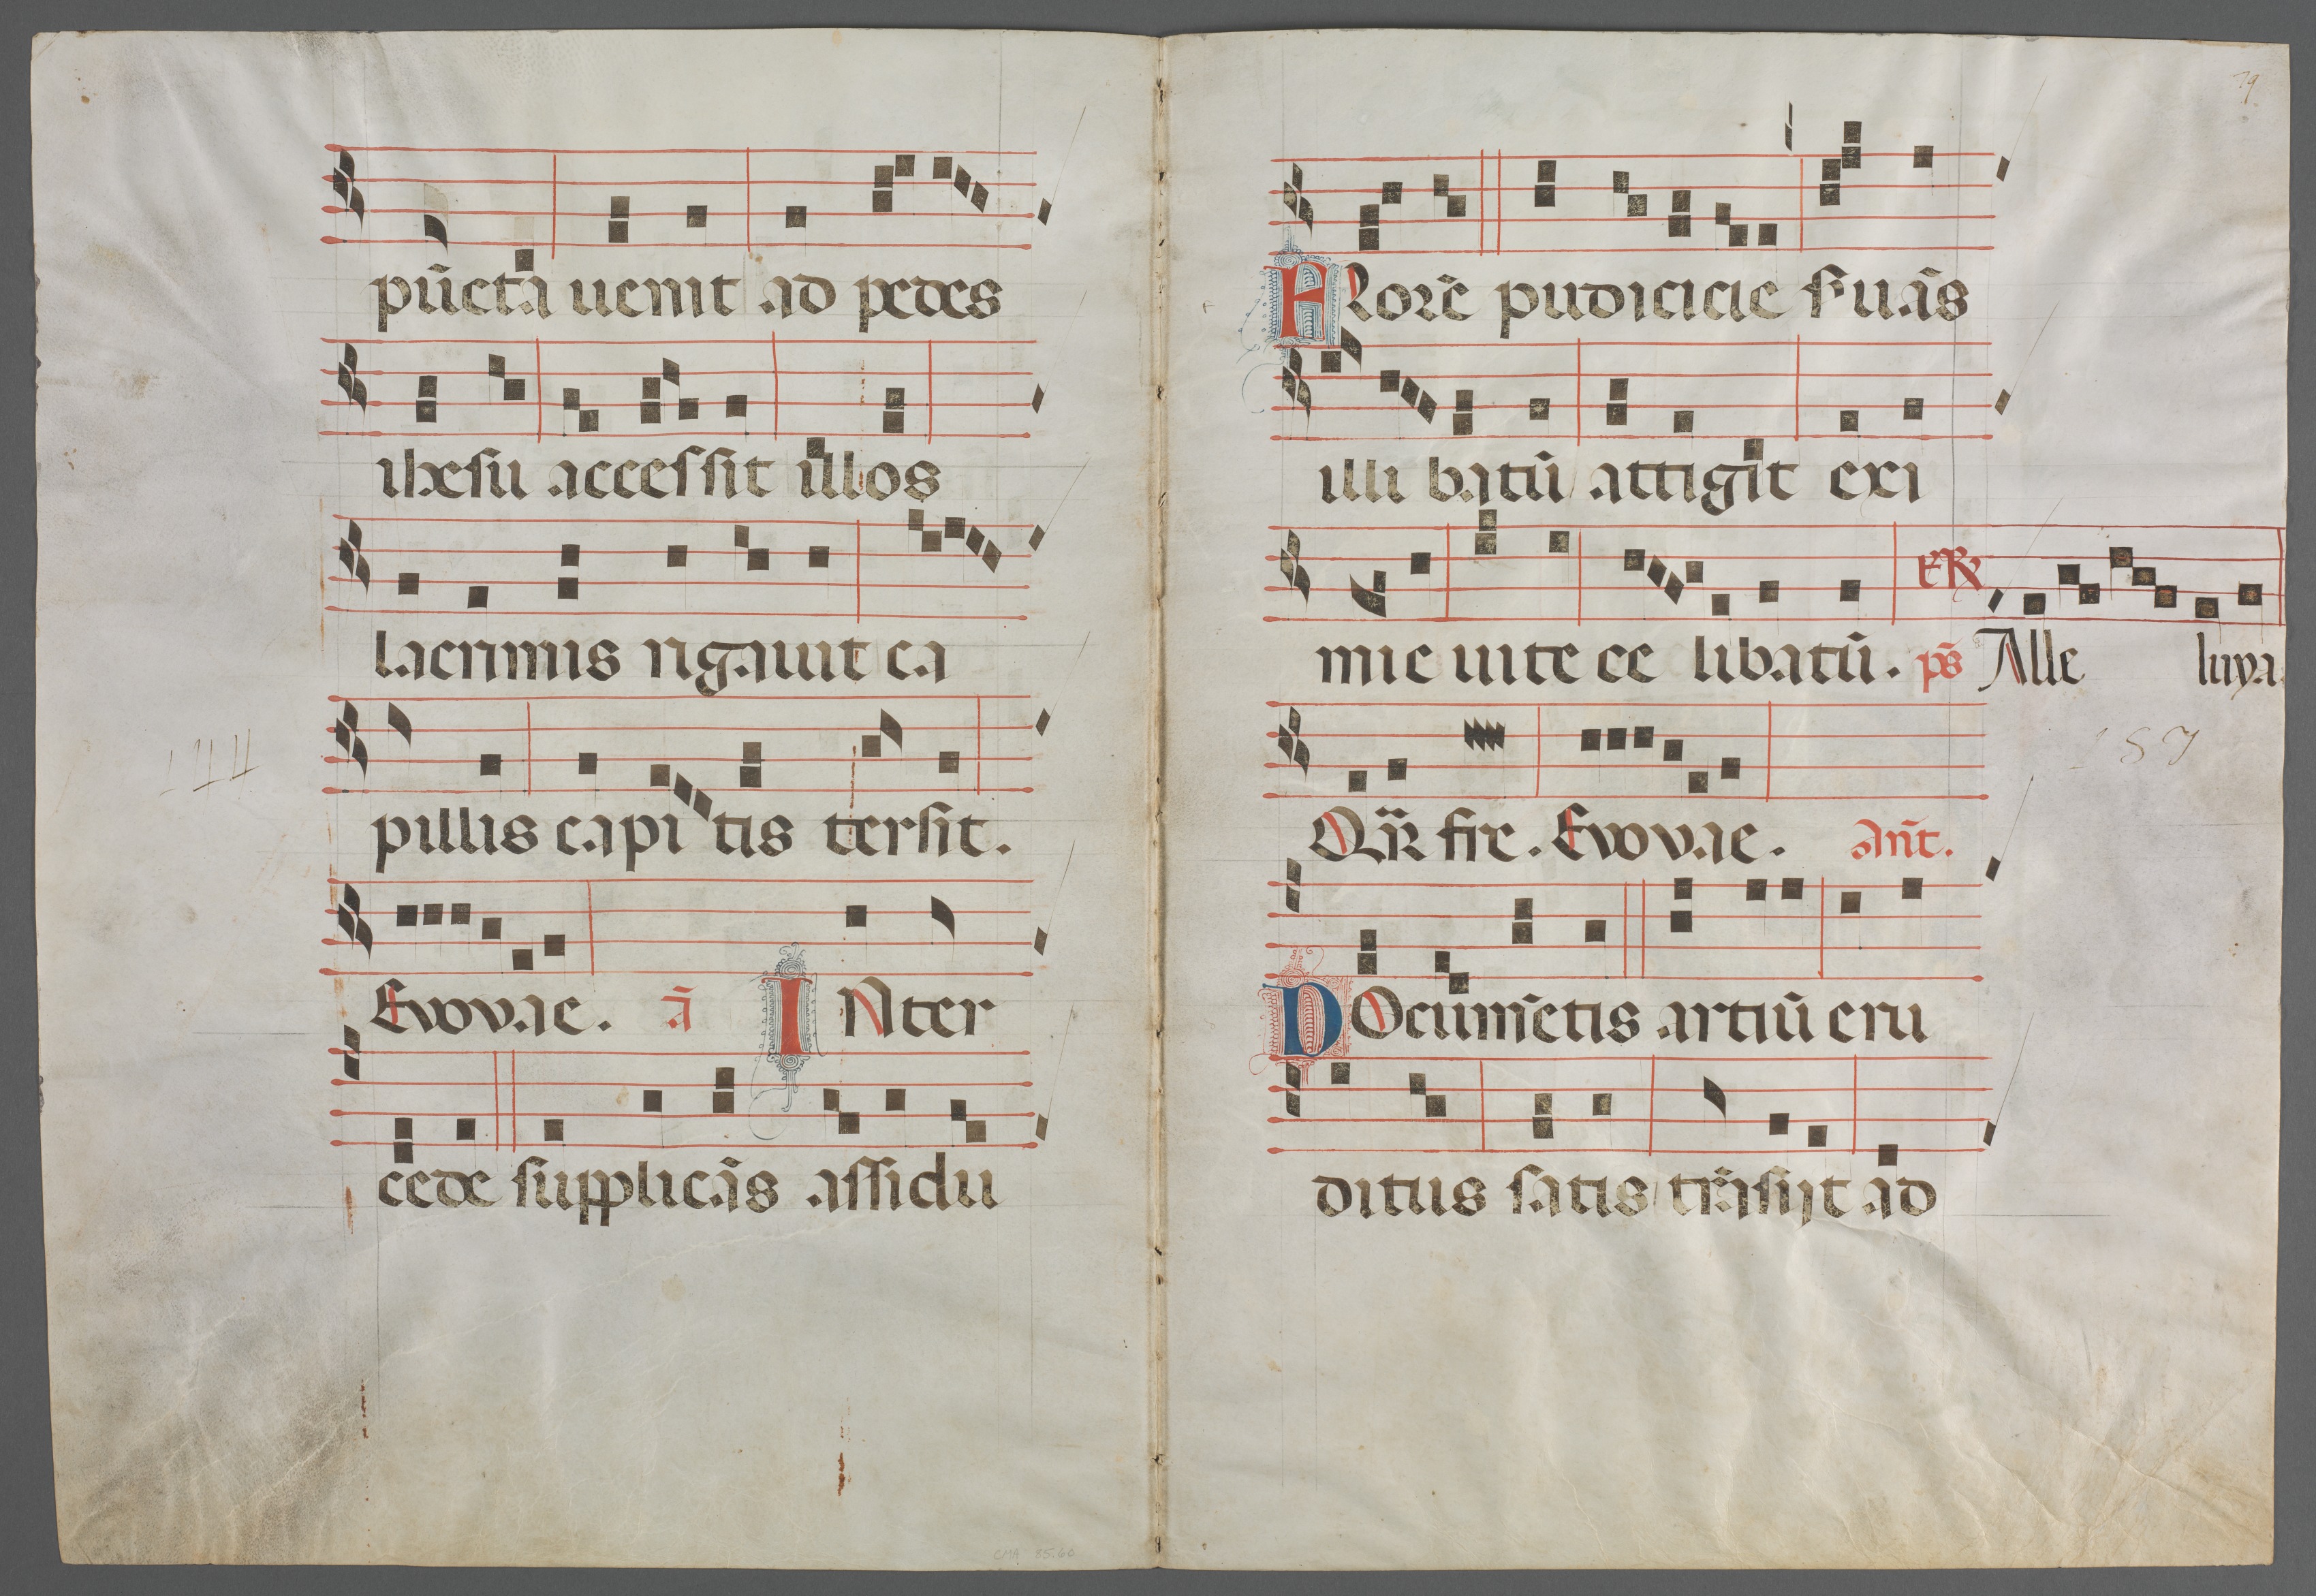 Bifolium from an Antiphonary: Music